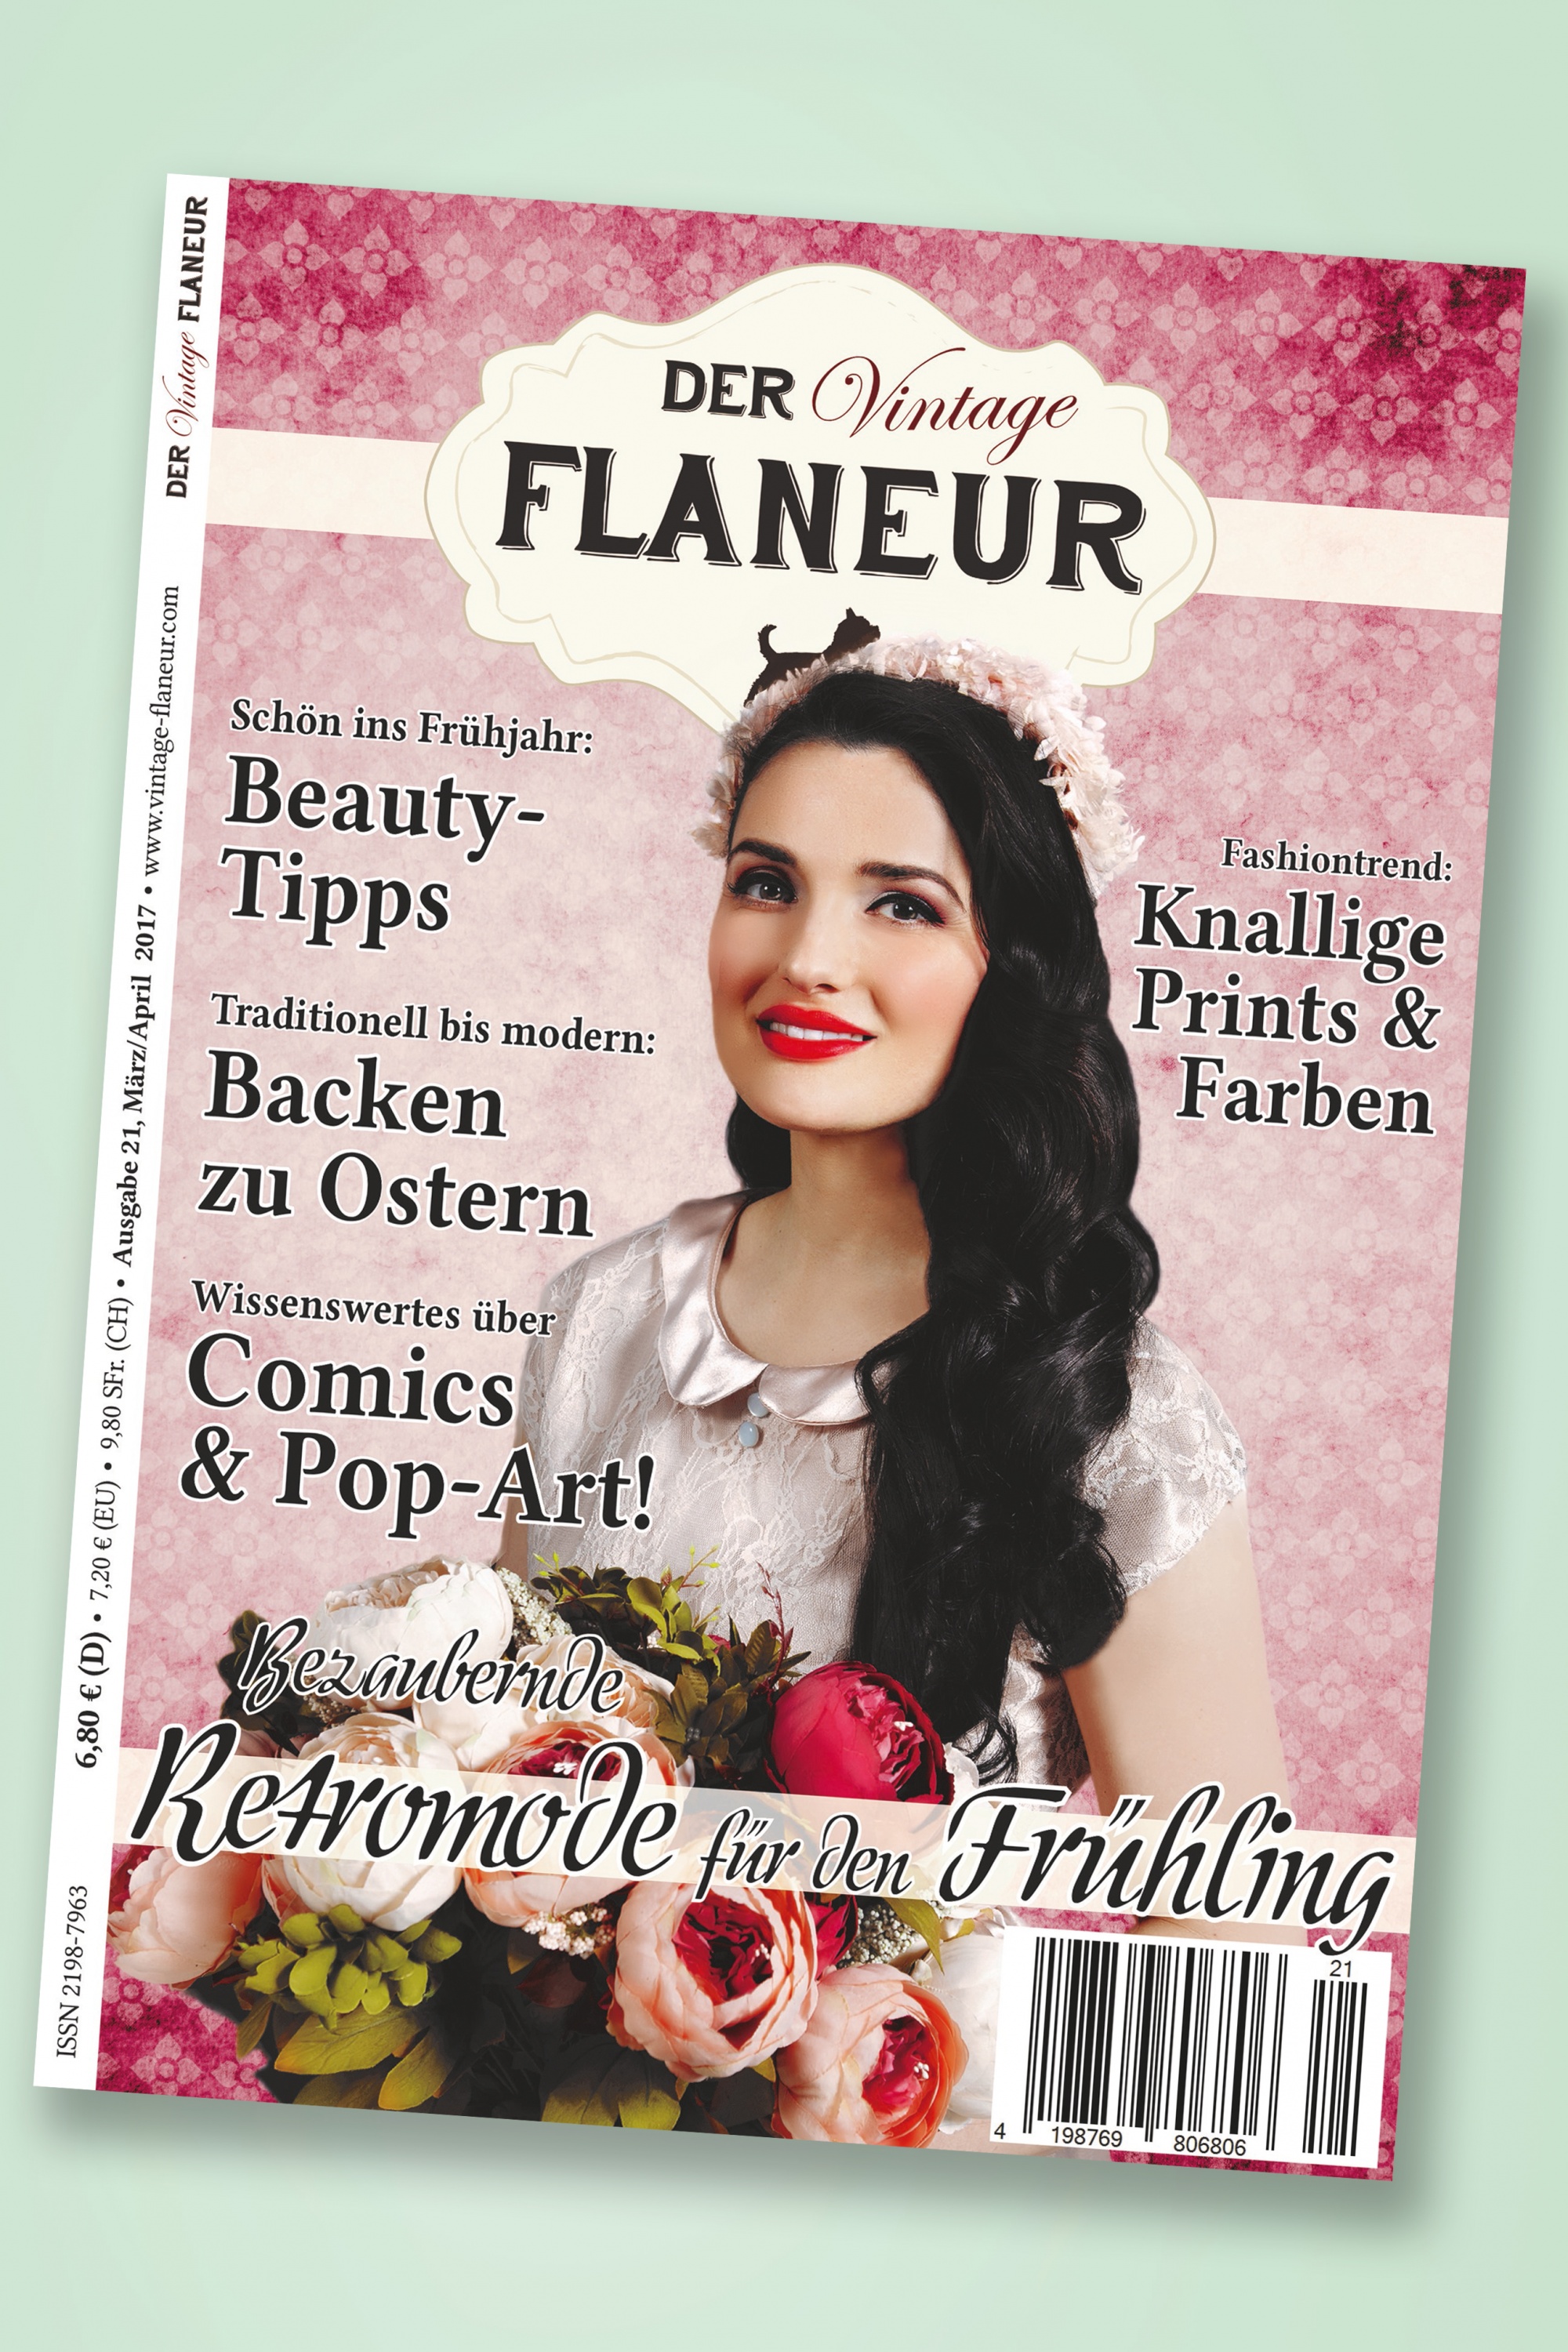 Der Vintage Flaneur - Der Vintage Flaneur Uitgegeven op 21, 2017